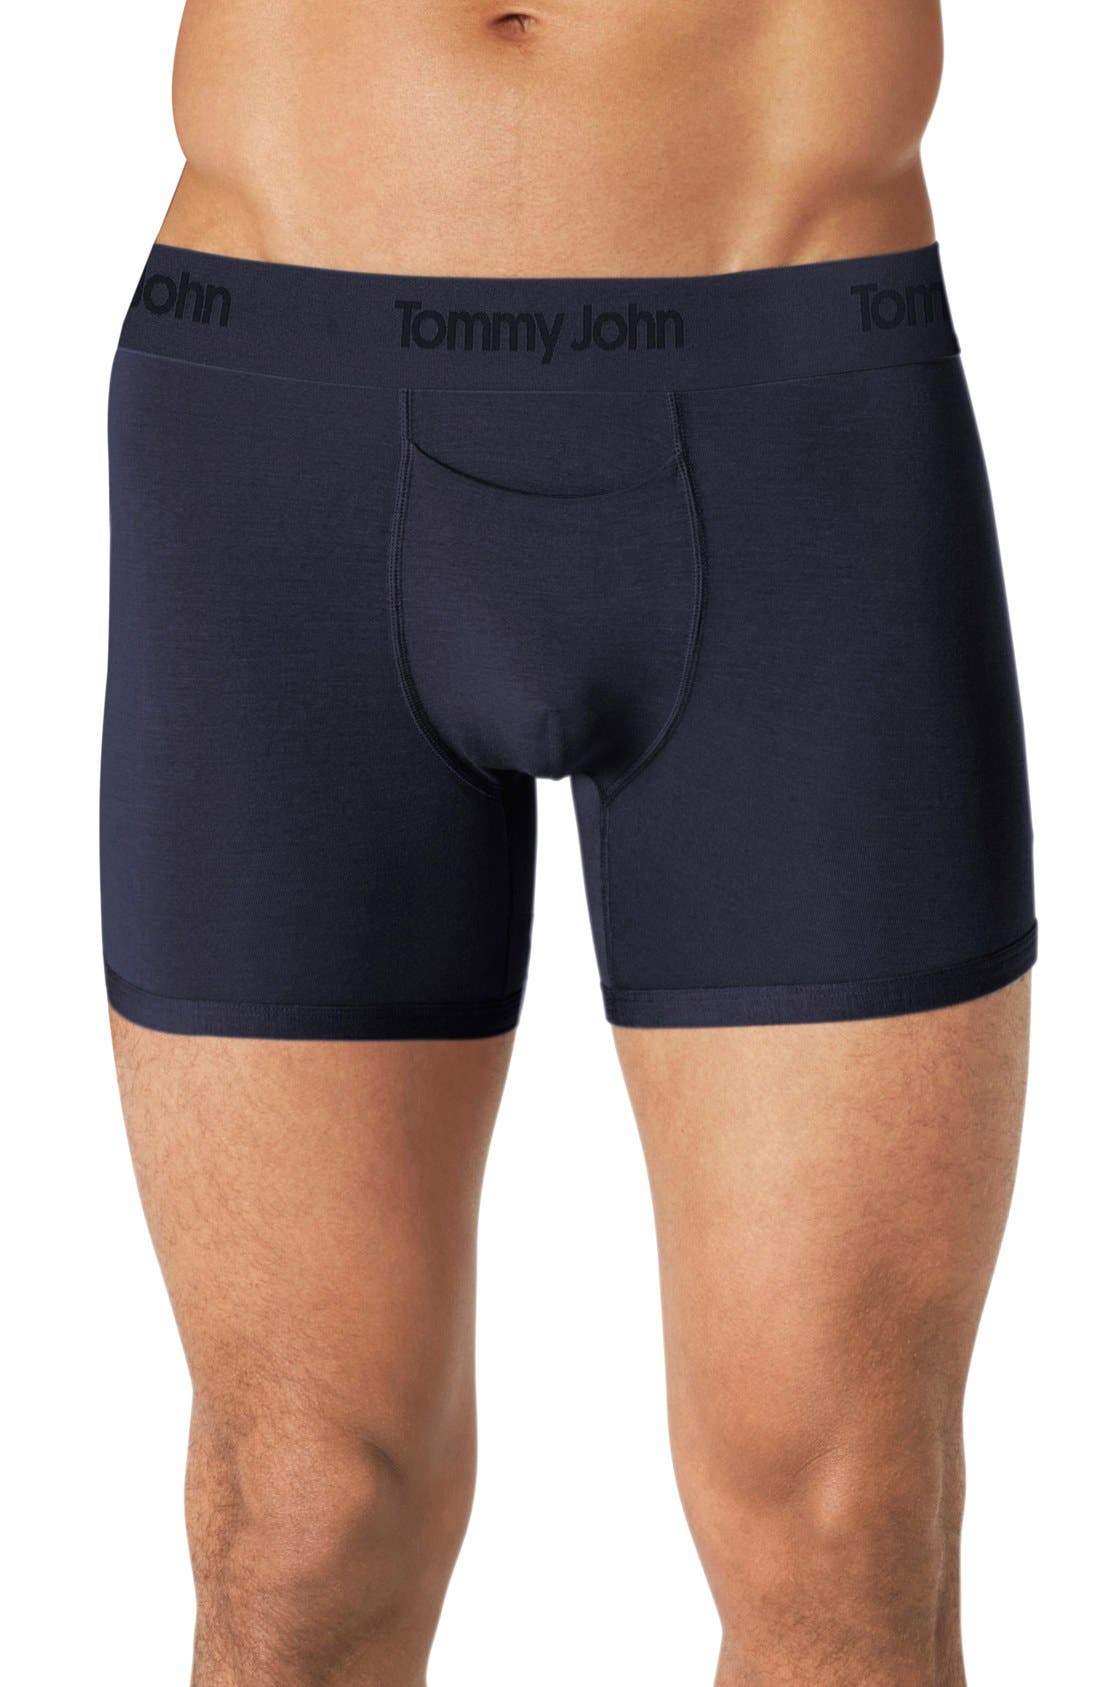 free tommy john underwear